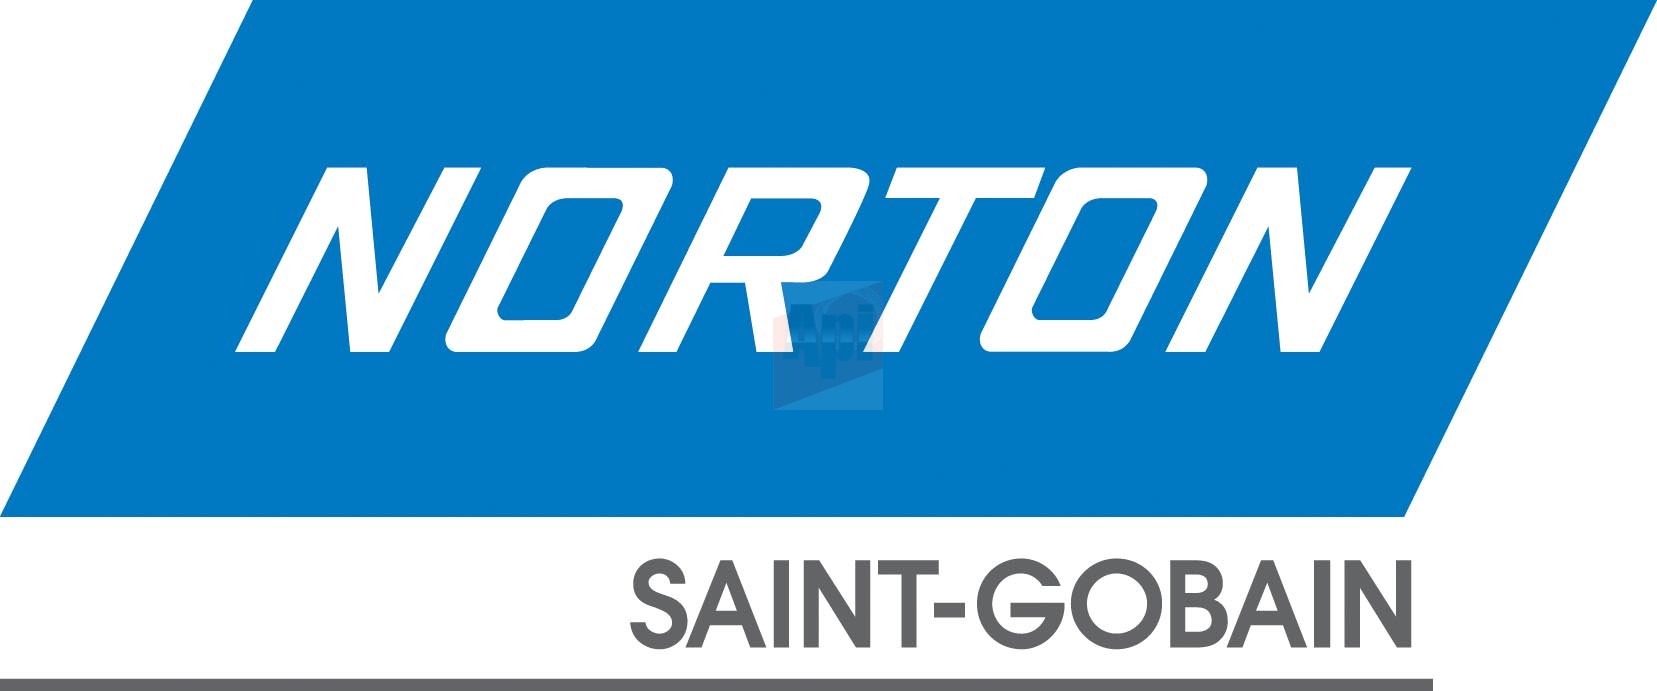 Master Norton SG logo